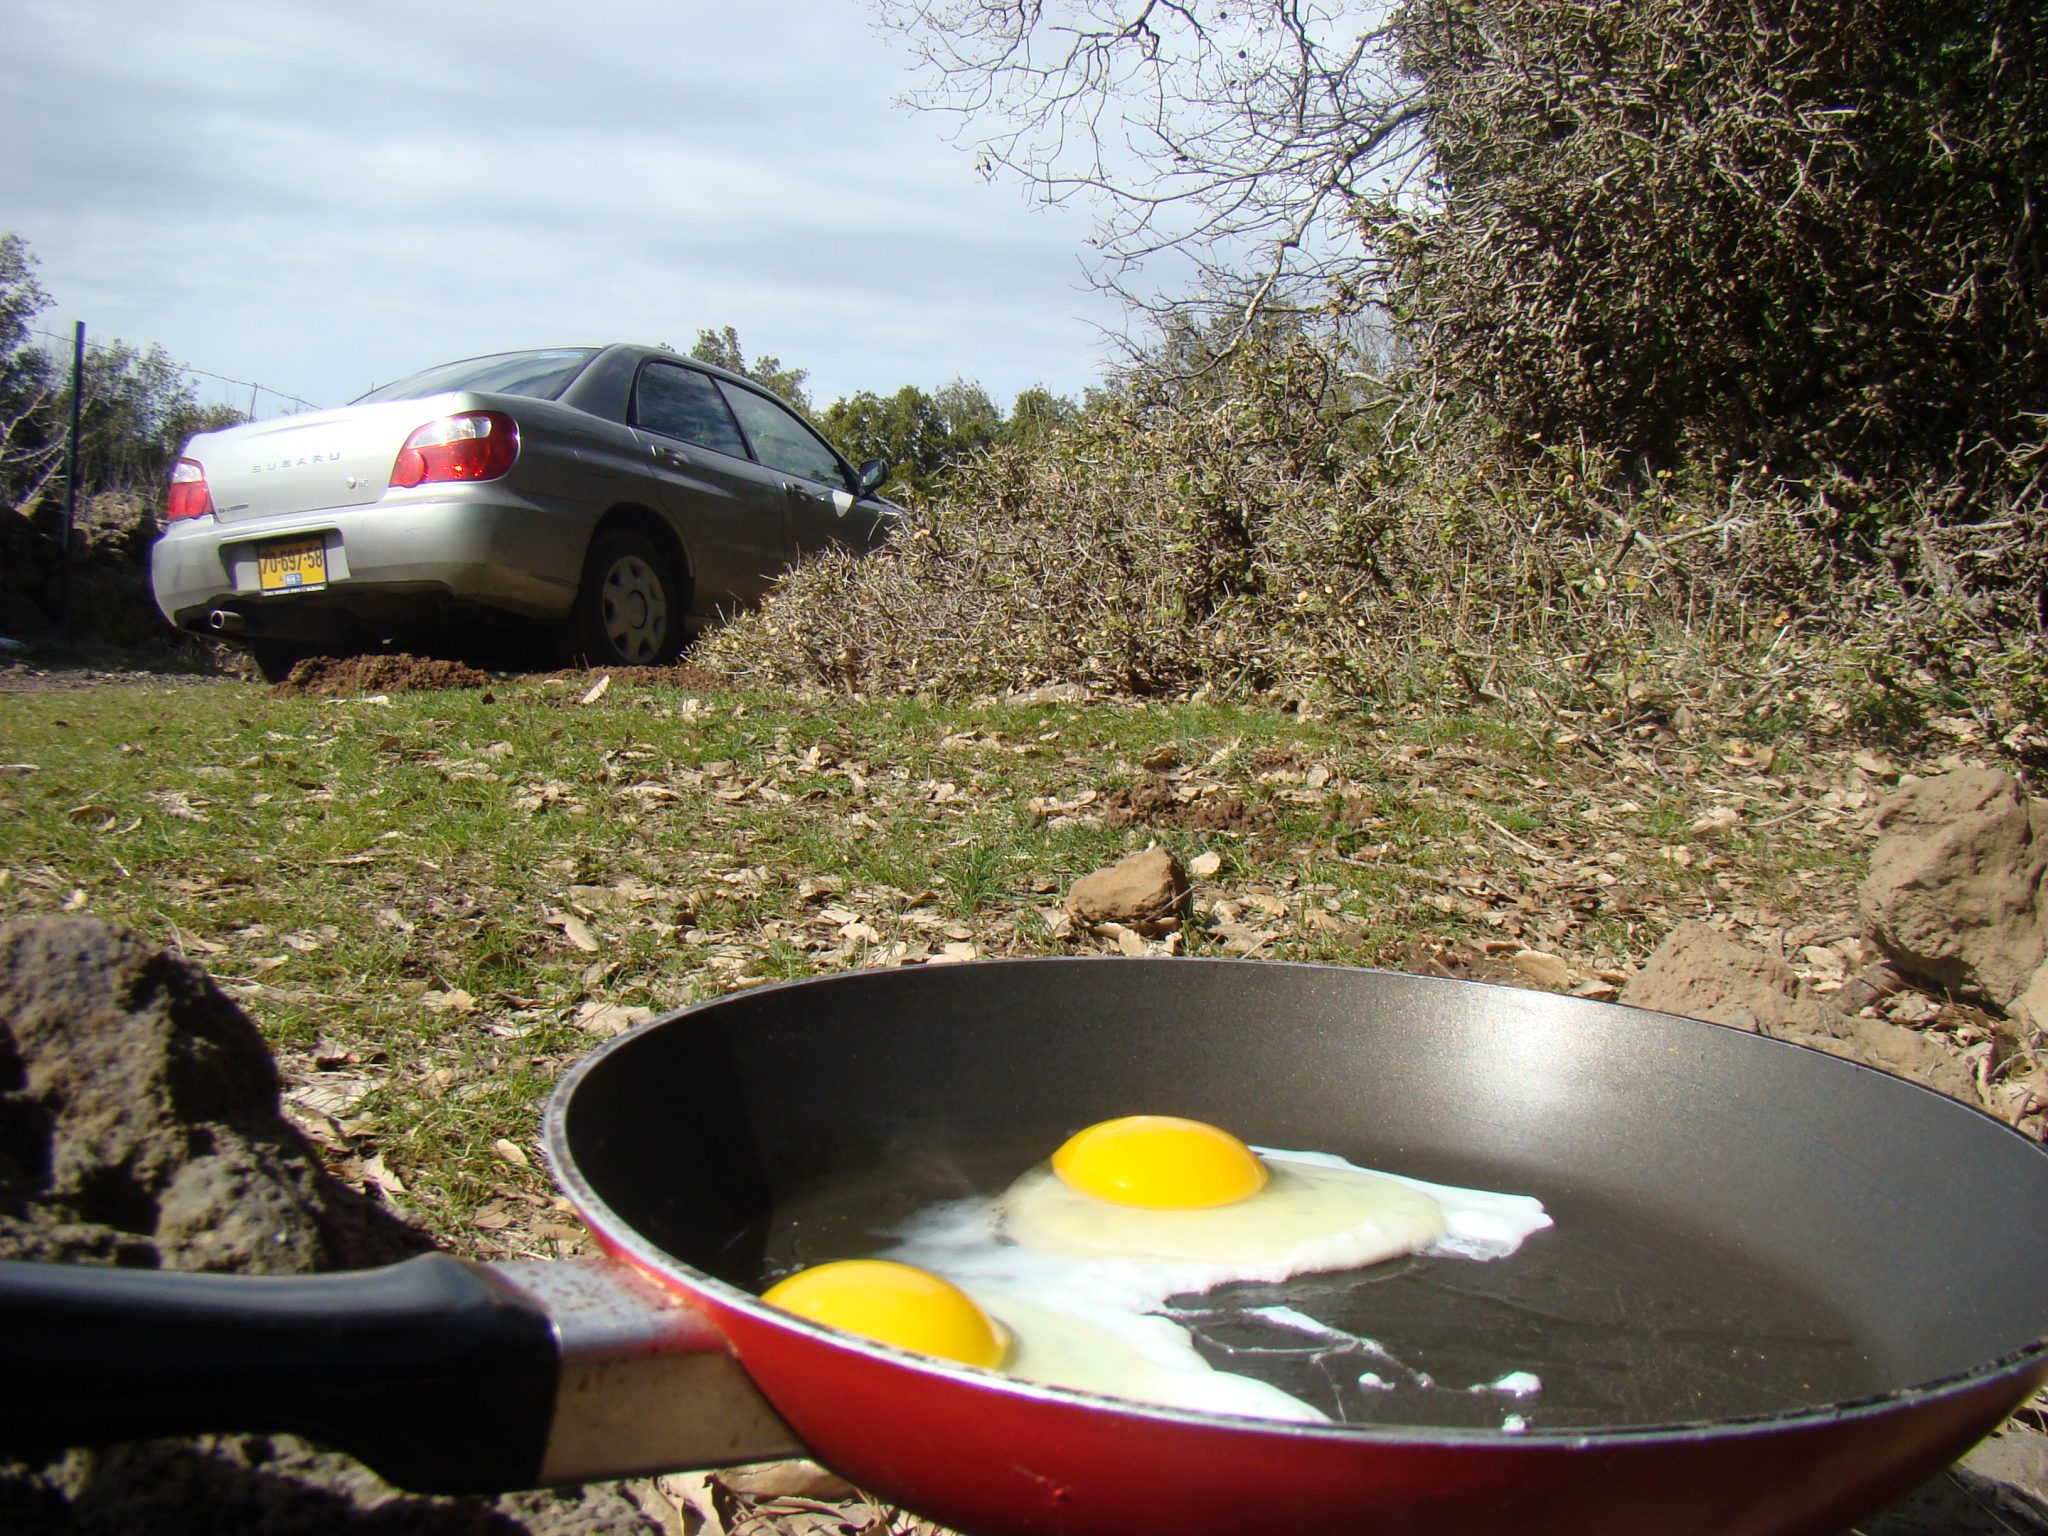 ארוחת בוקר ביער אודם (צילום: ד"ר ענת אביטל)